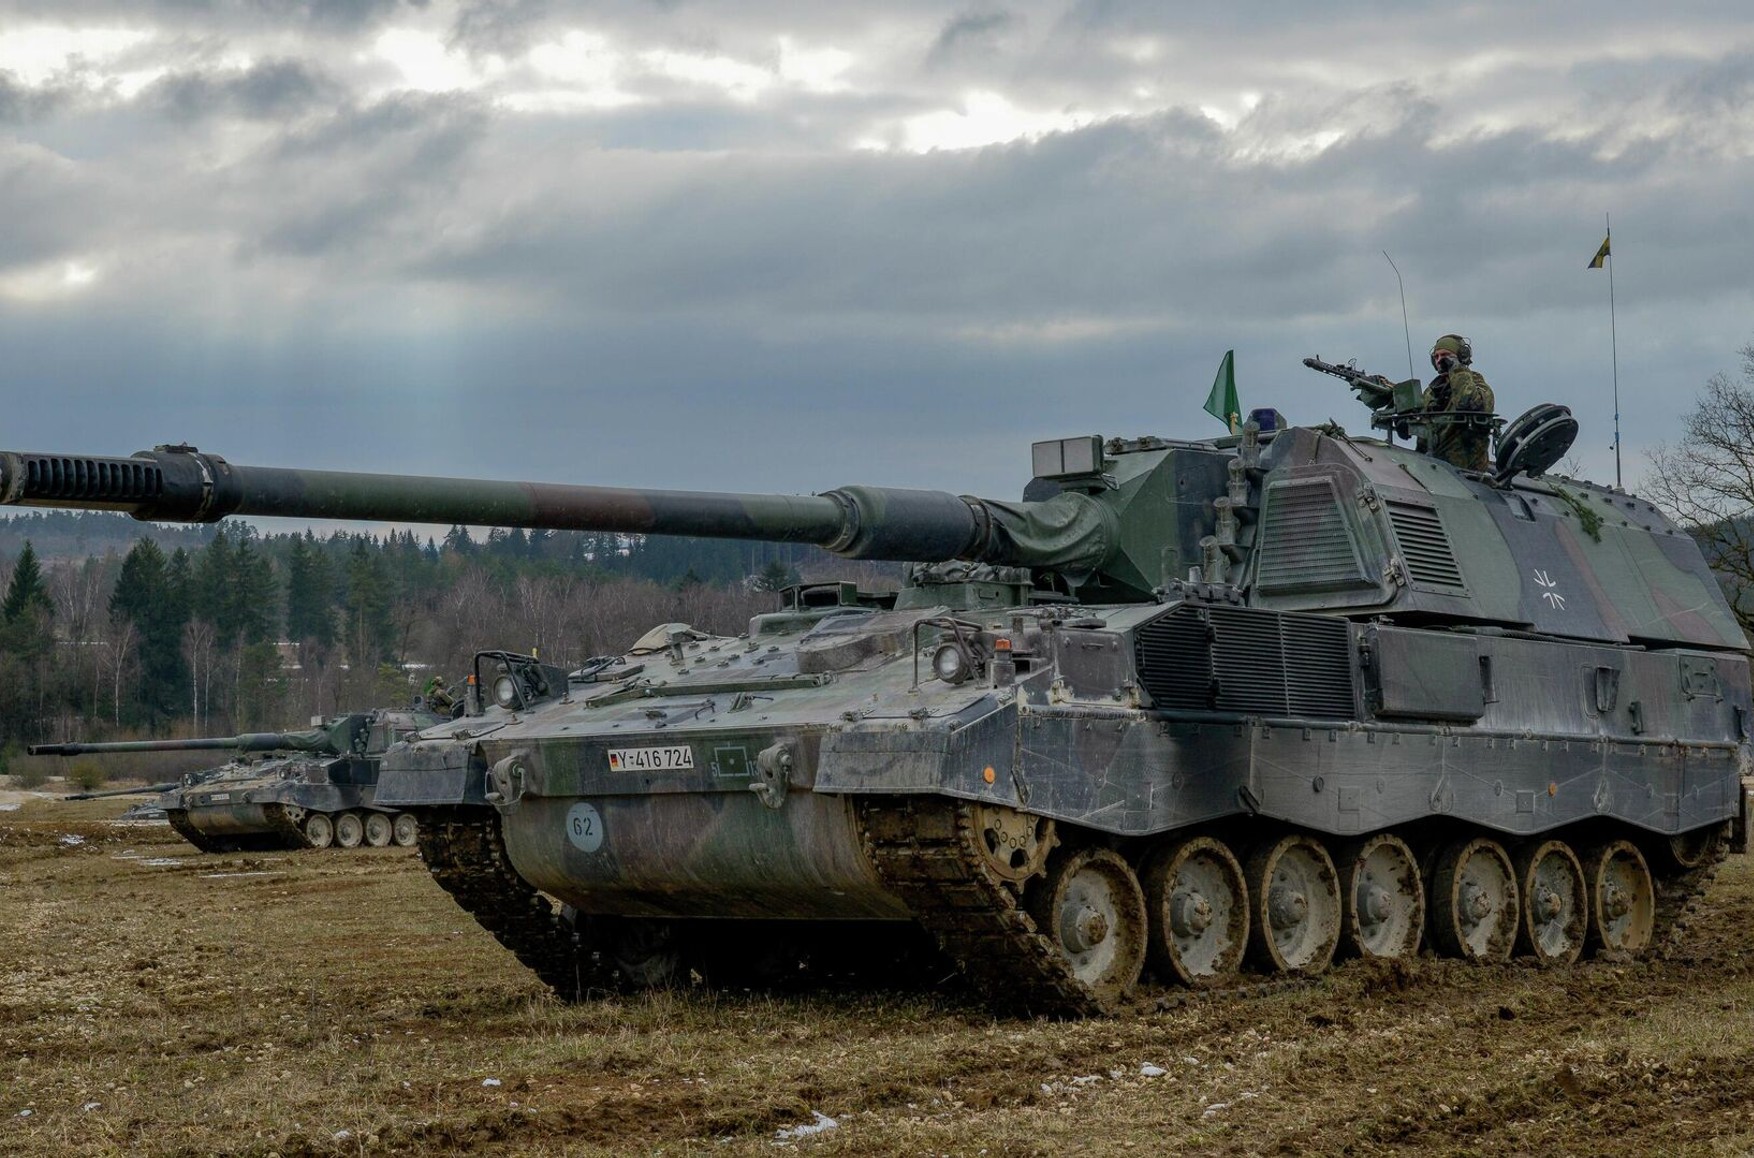  Der Spiegel: Германия согласилась продать 100 гаубиц PzH 2000 Украине. Они могут выпускать до 10 снарядов в минуту дальностью до 50 км